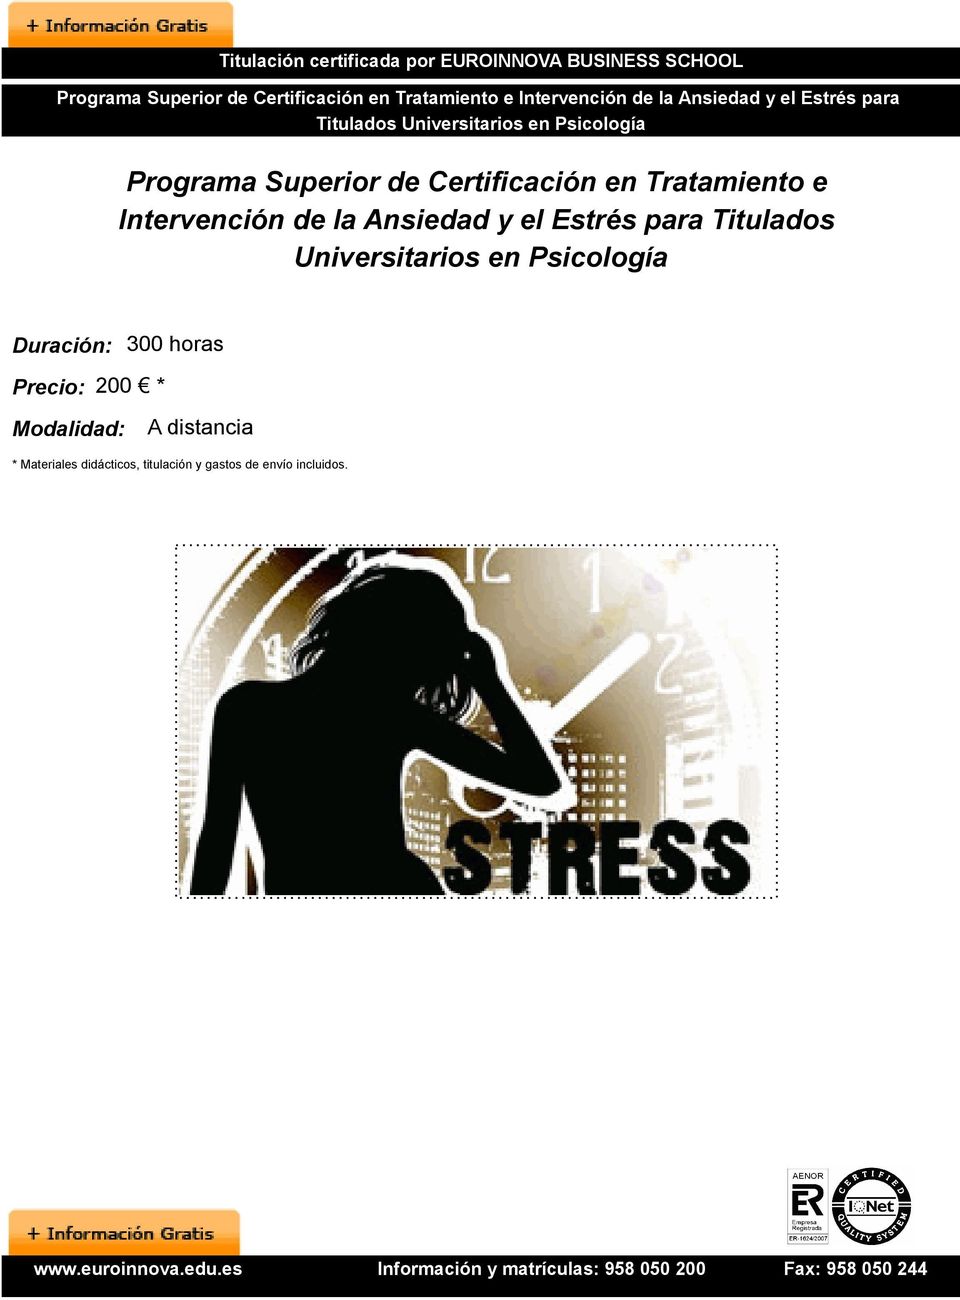 Tratamiento e Intervención de la Ansiedad y el Estrés para Titulados Universitarios en Psicología